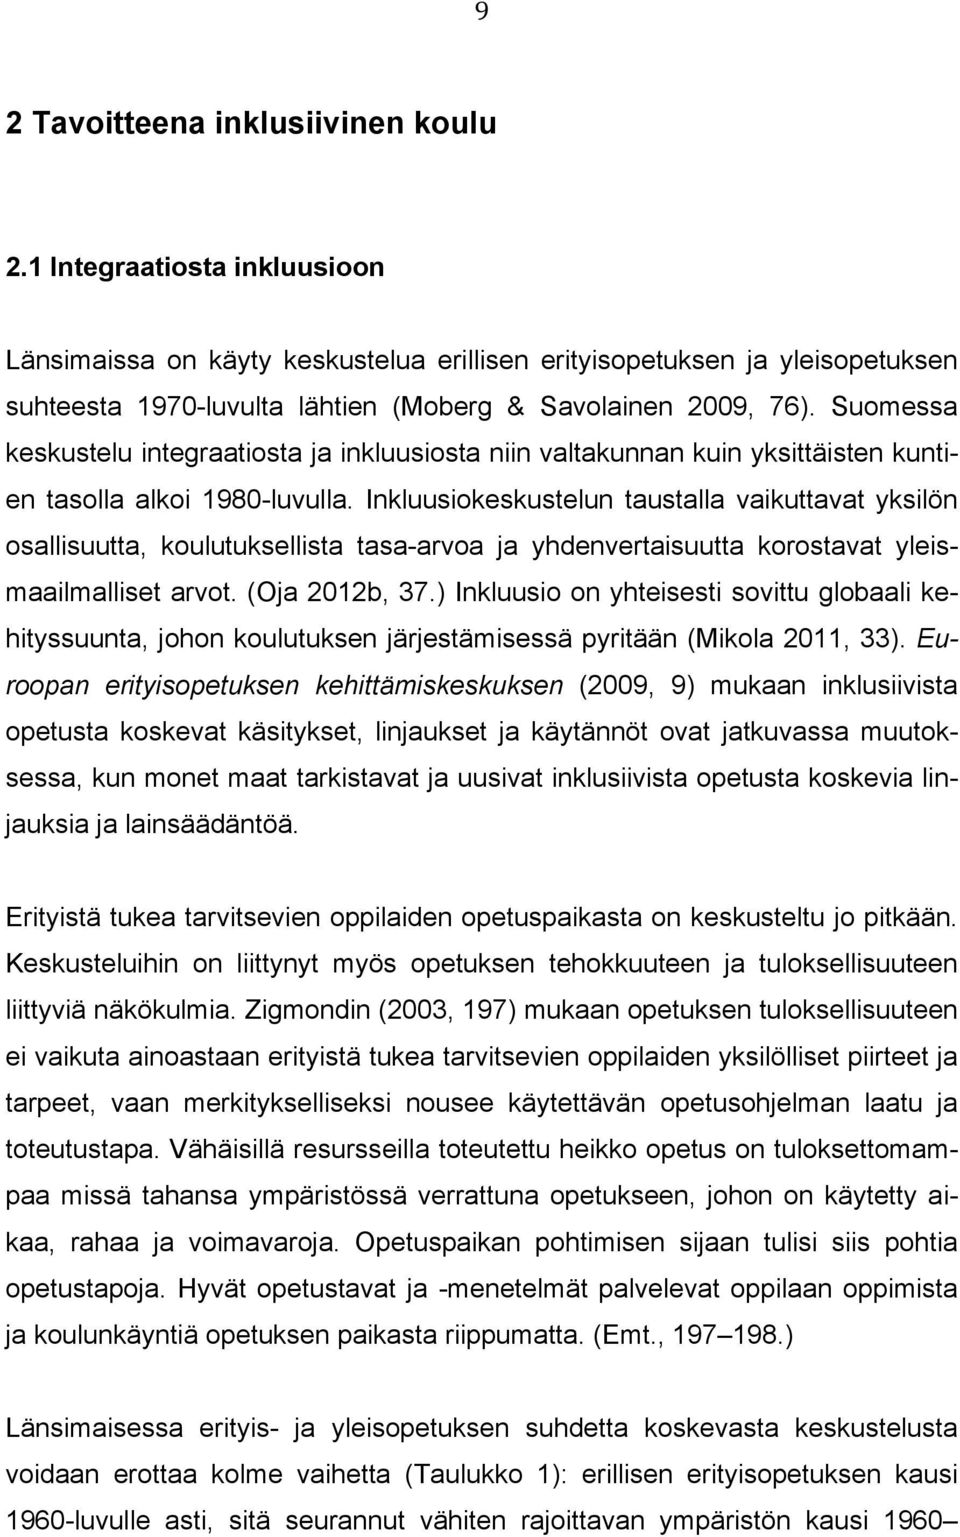 Suomessa keskustelu integraatiosta ja inkluusiosta niin valtakunnan kuin yksittäisten kuntien tasolla alkoi 1980-luvulla.